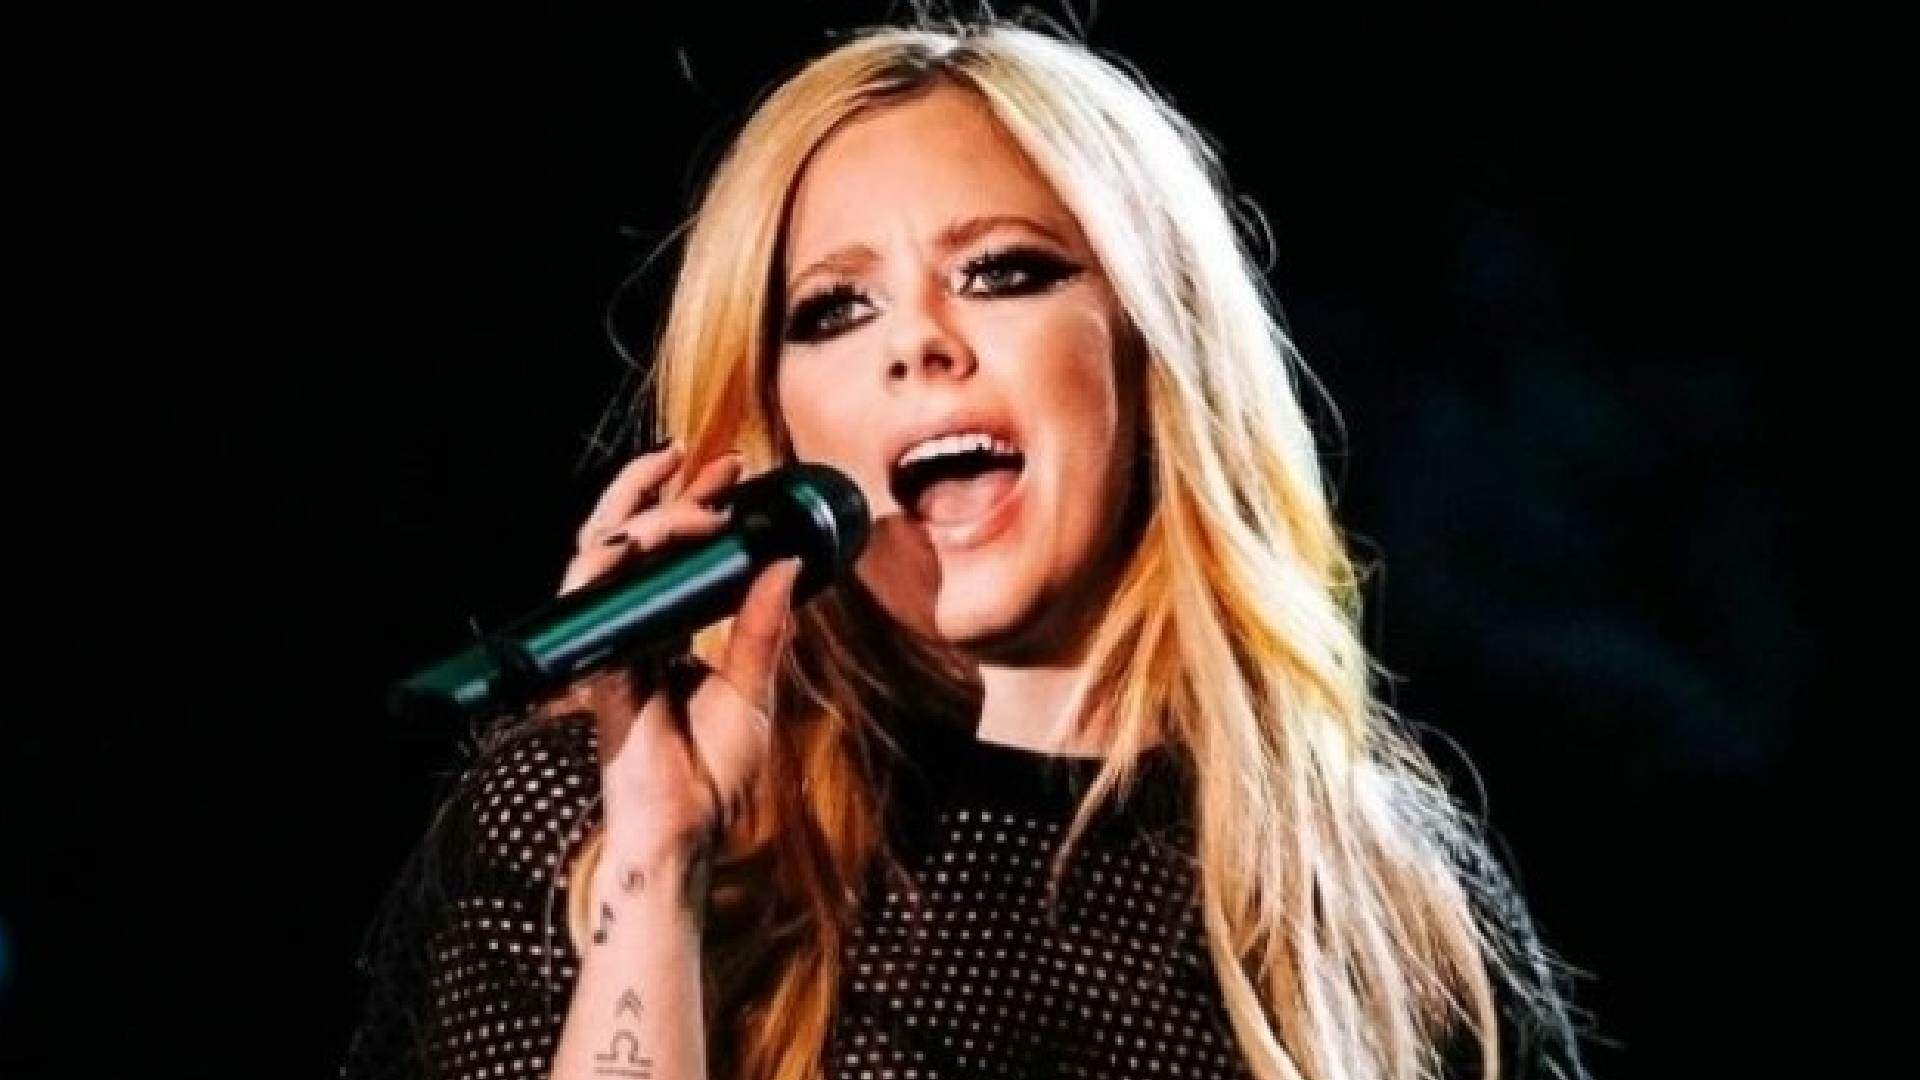 Segura esse rock! Avril Lavigne confirma parceria musical com famoso roqueiro e anima fãs - Metropolitana FM